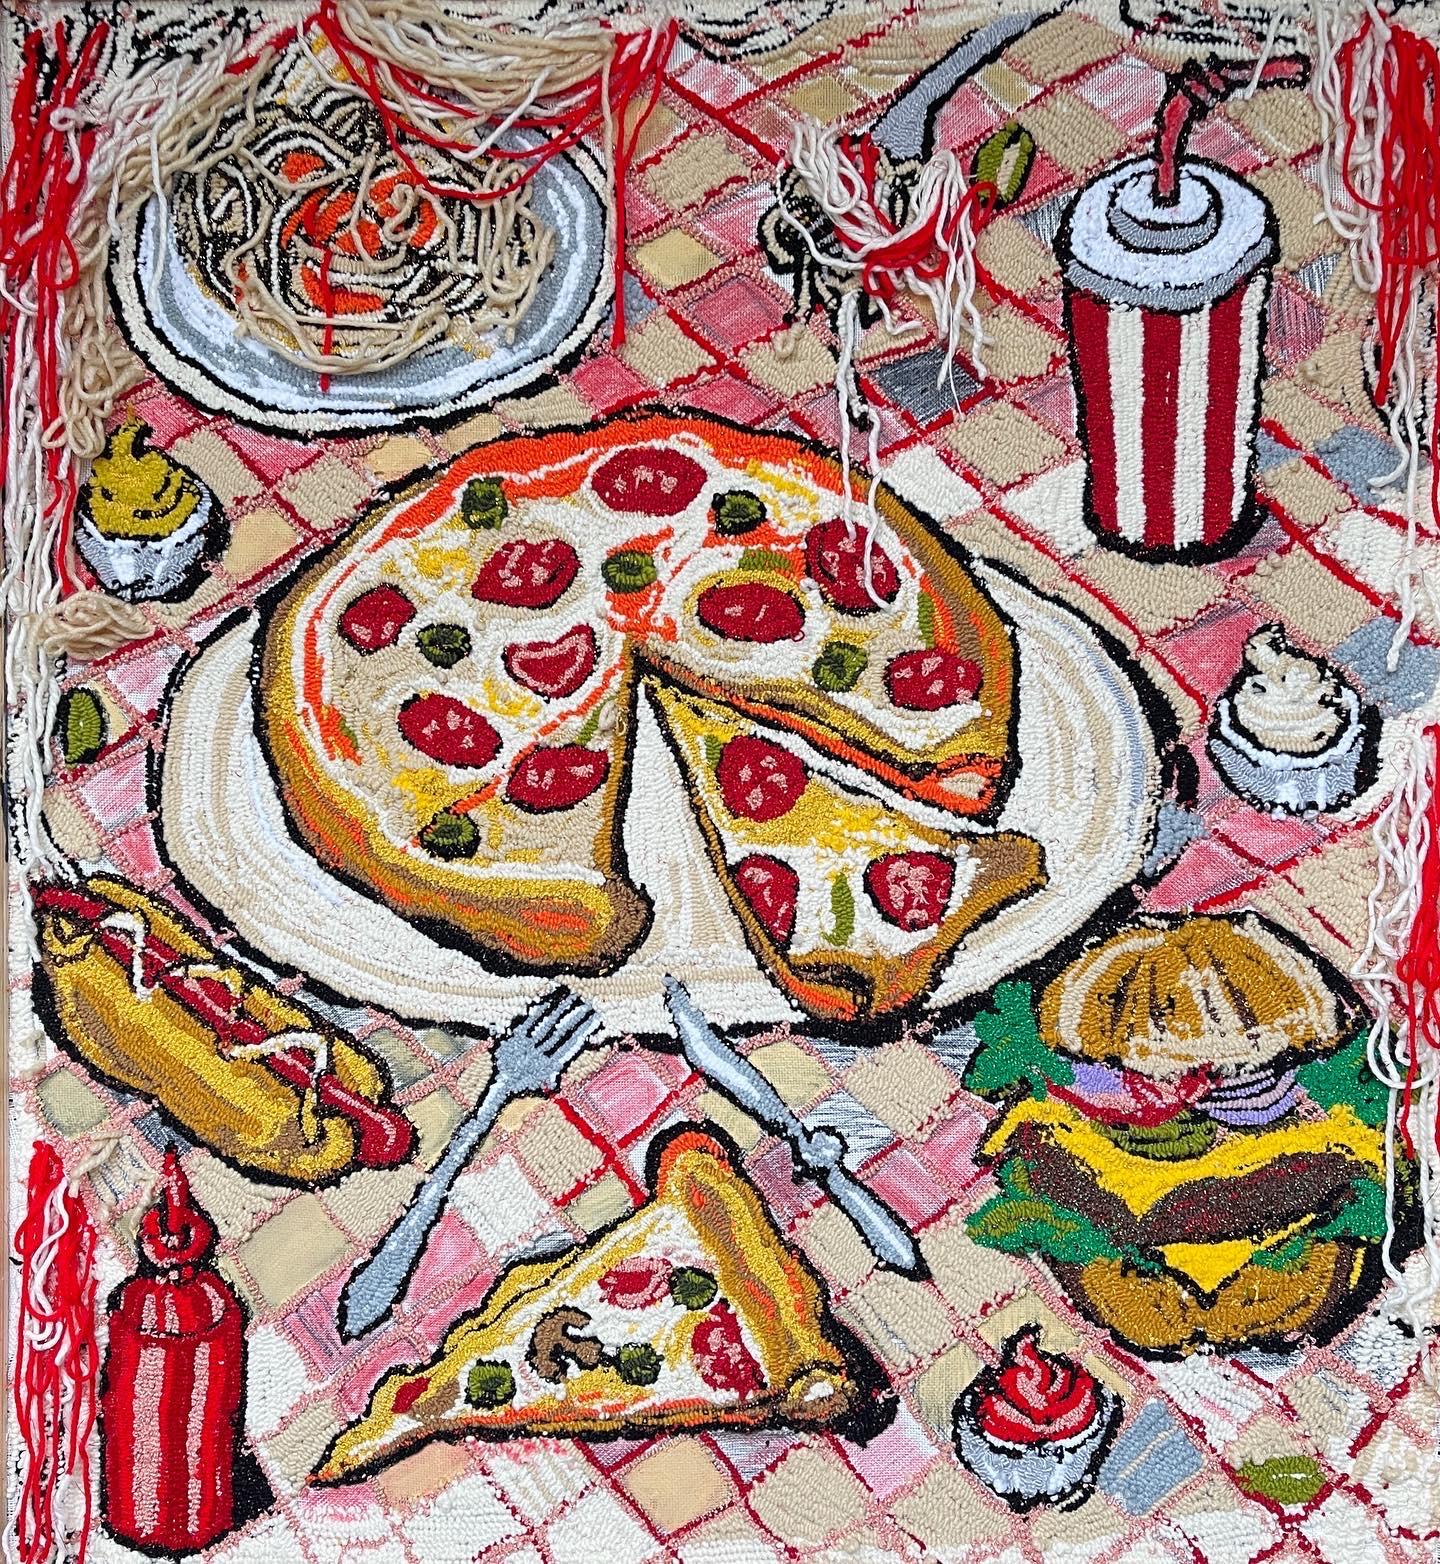 Still life with pizza - Mixed Media Art by Julia Kiryanova